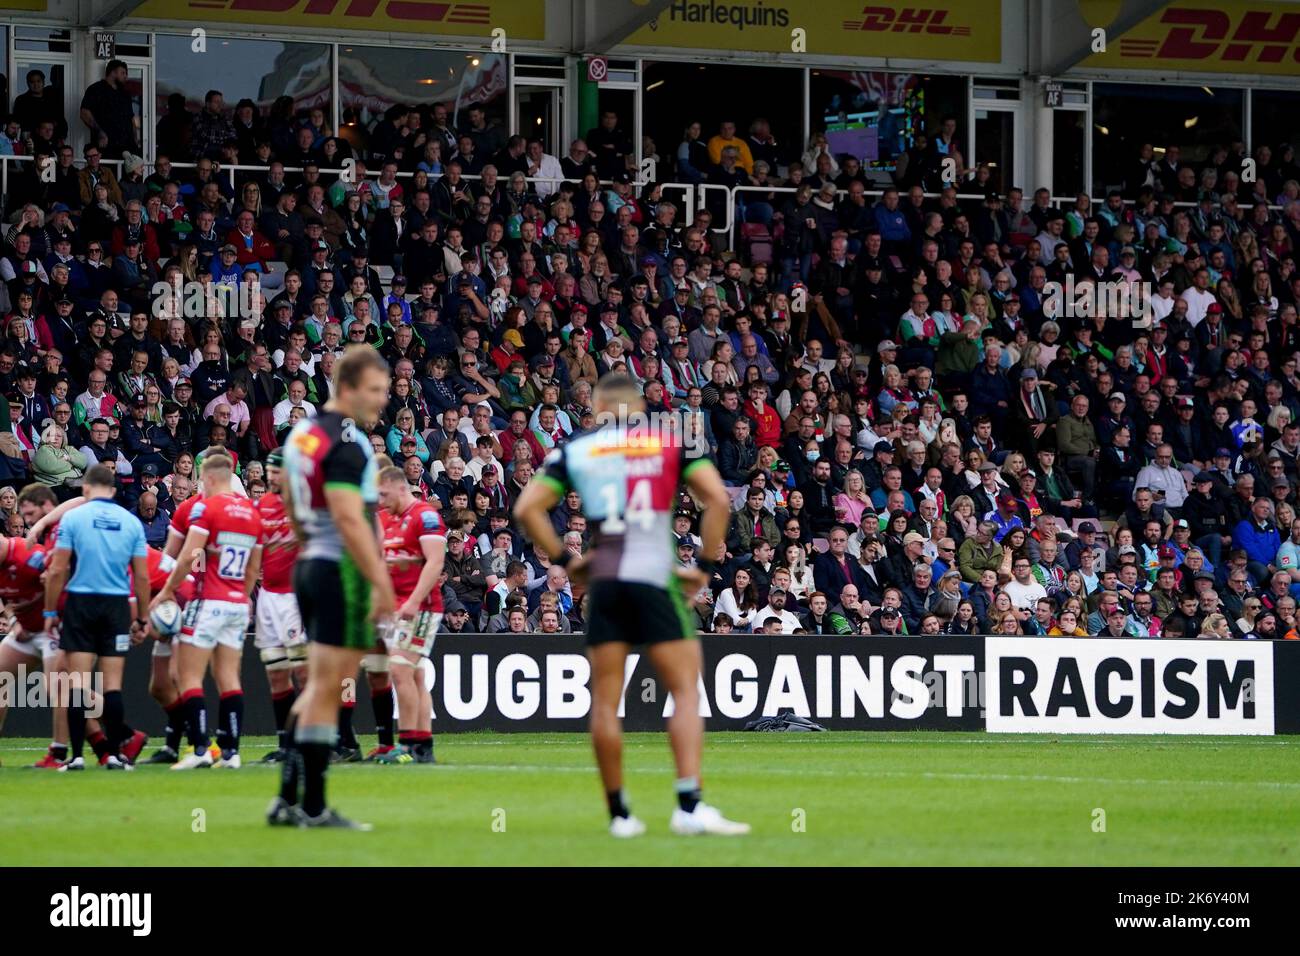 Una visione generale degli annunci “Rugby Against Racism” durante la partita Gallagher Premiership a Twickenham Stoop, Londra. Data immagine: Domenica 16 ottobre 2022. Foto Stock